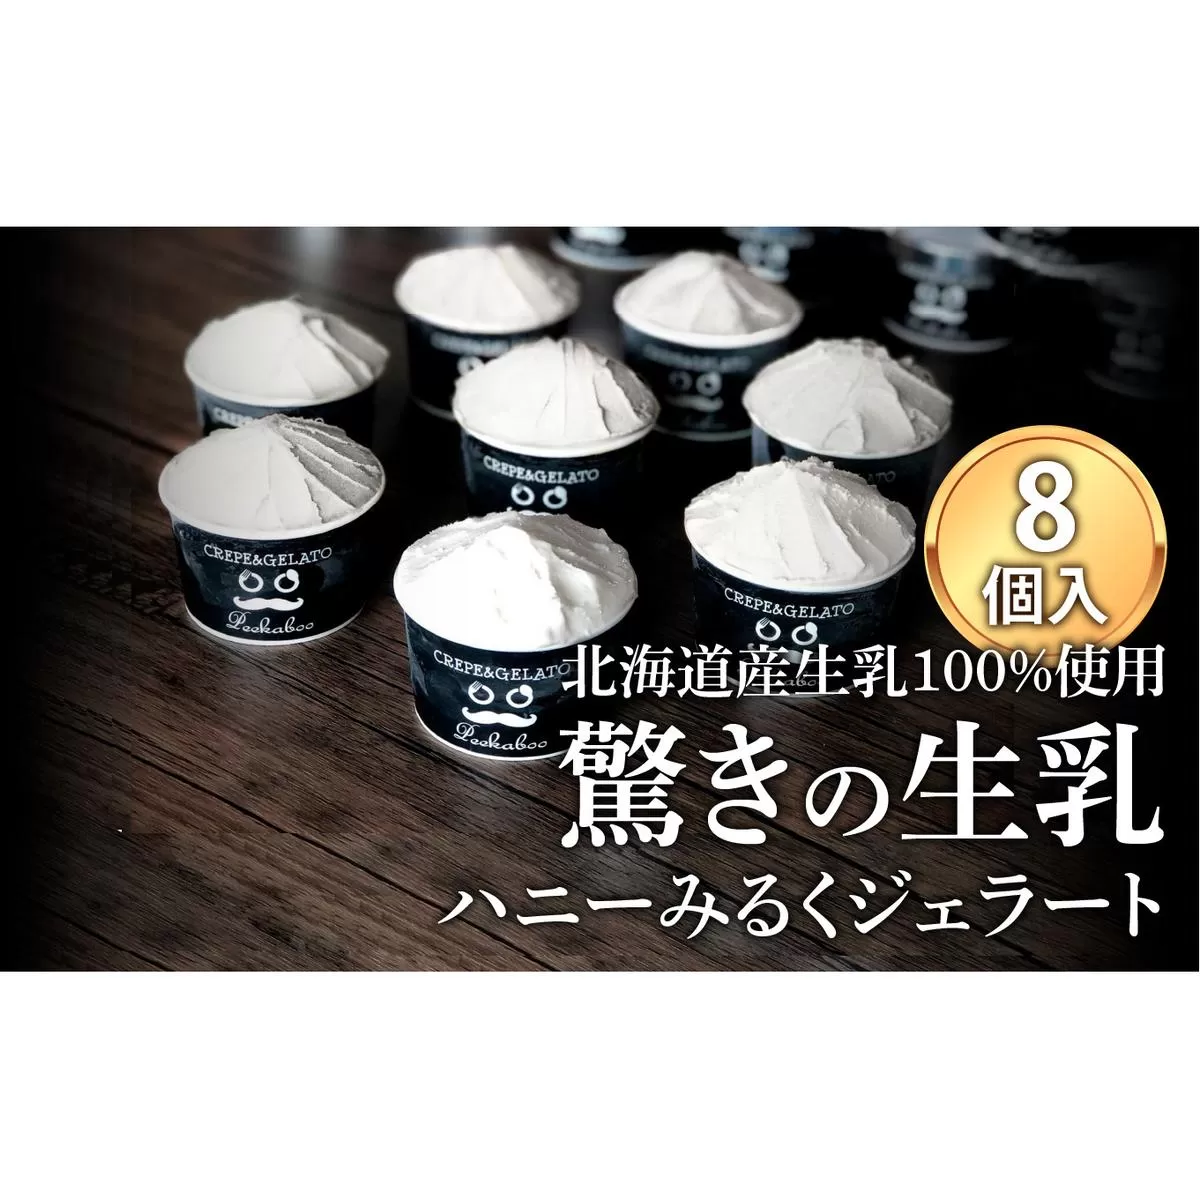 北海道産 生乳 ジェラート アイス ハニー ミルク 8個入り ジェラートセット